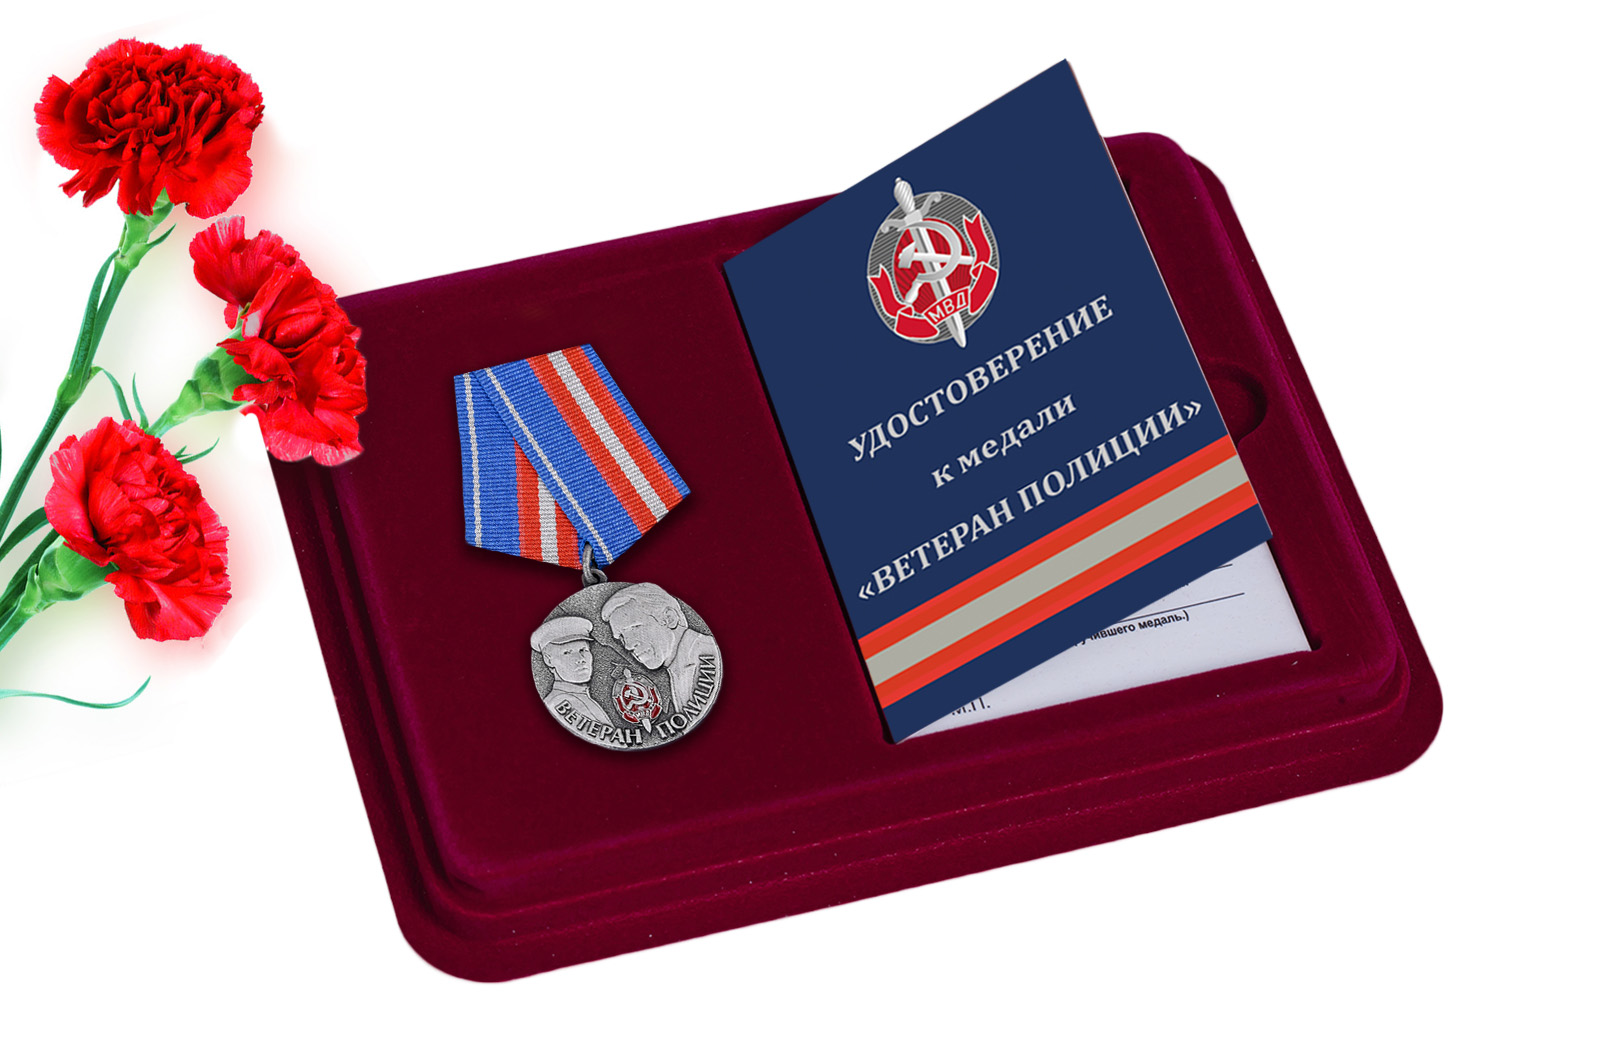 Купить медаль Ветеран полиции в футляре с удостоверением в подарок